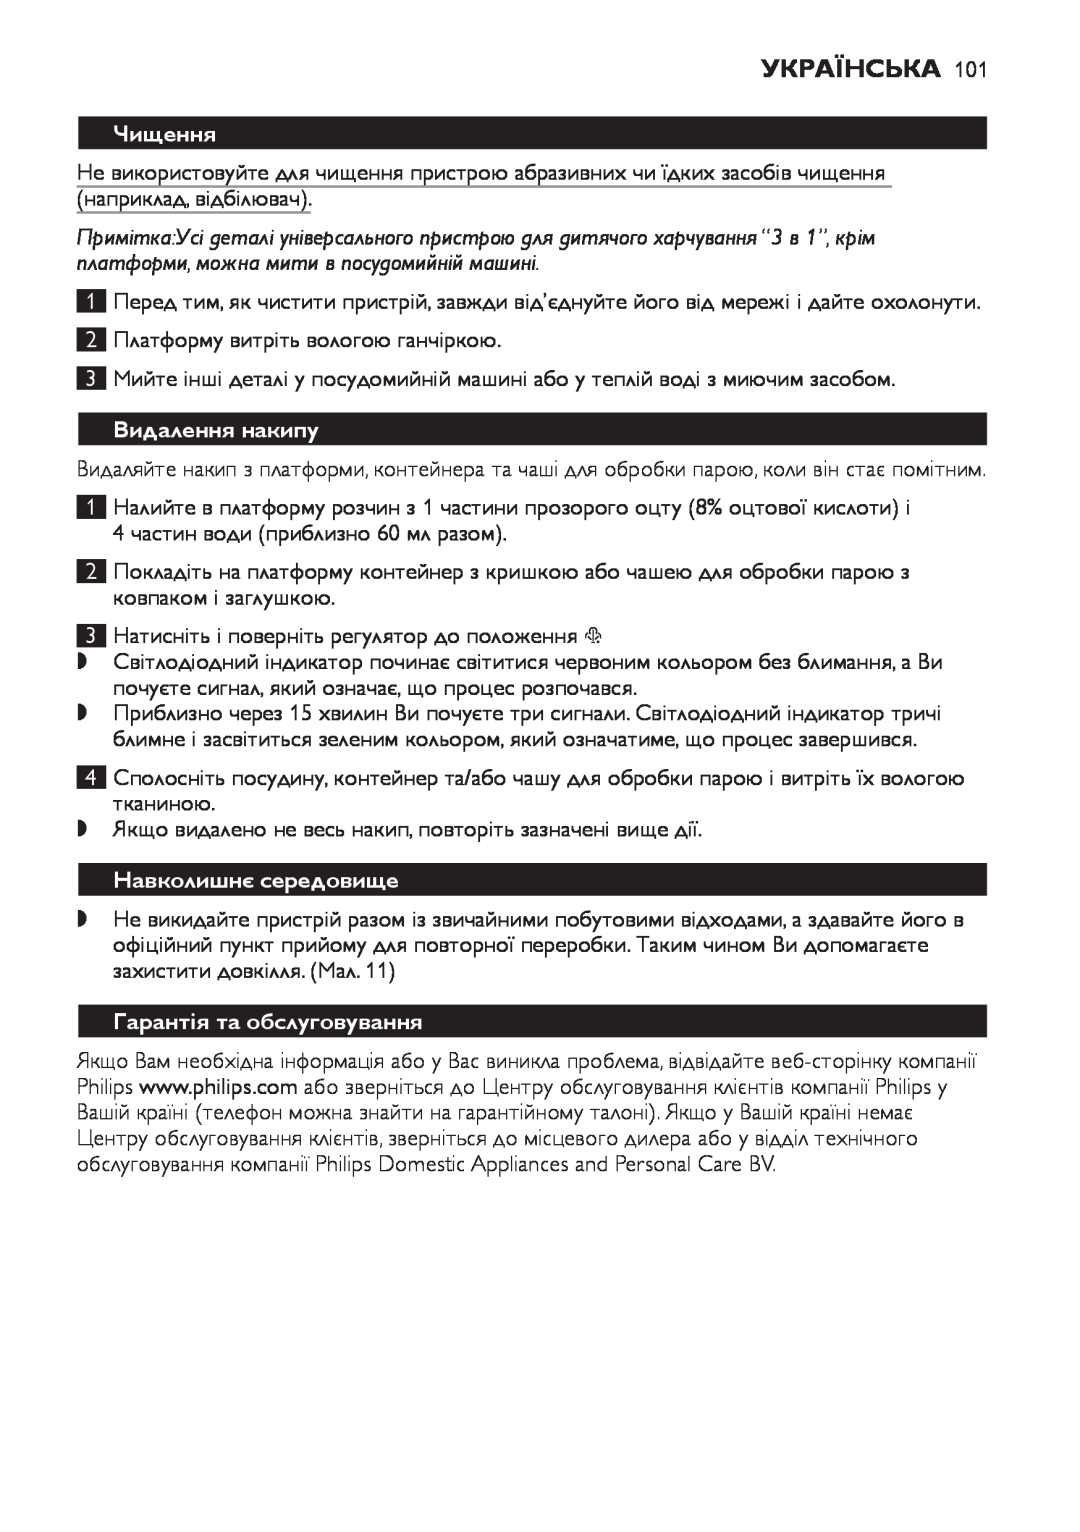 Philips SCF280 manual Чищення, Видалення накипу, Навколишнє середовище, Гарантія та обслуговування, Українська 